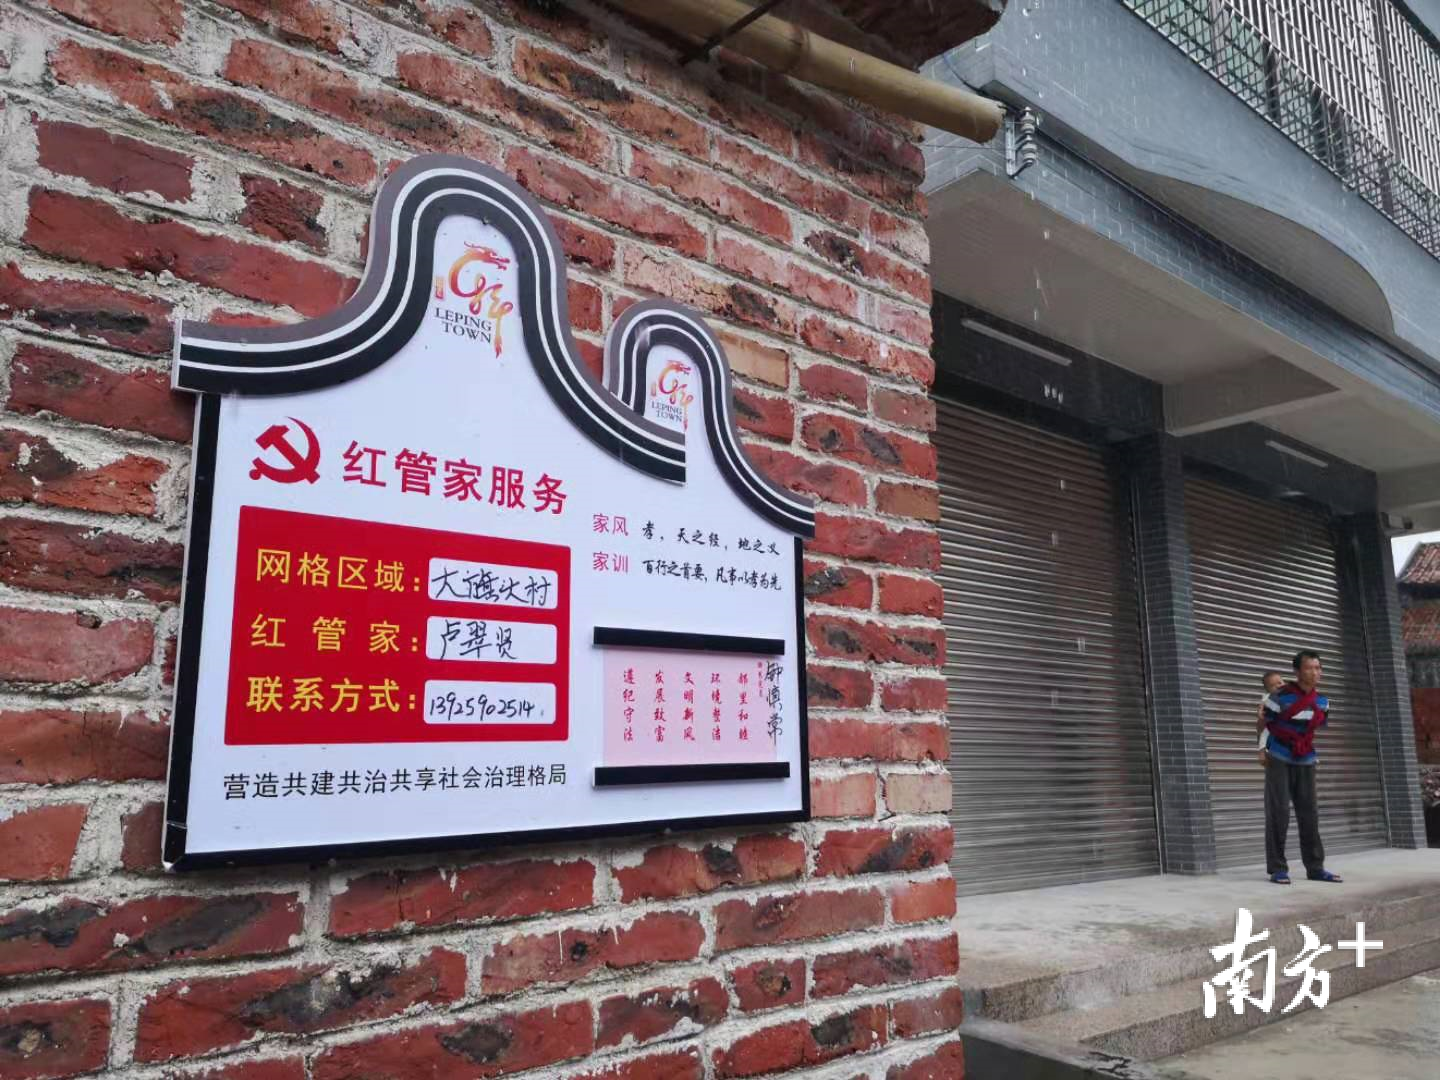 乐平镇推行党员“红管家”服务。林洛峰 摄